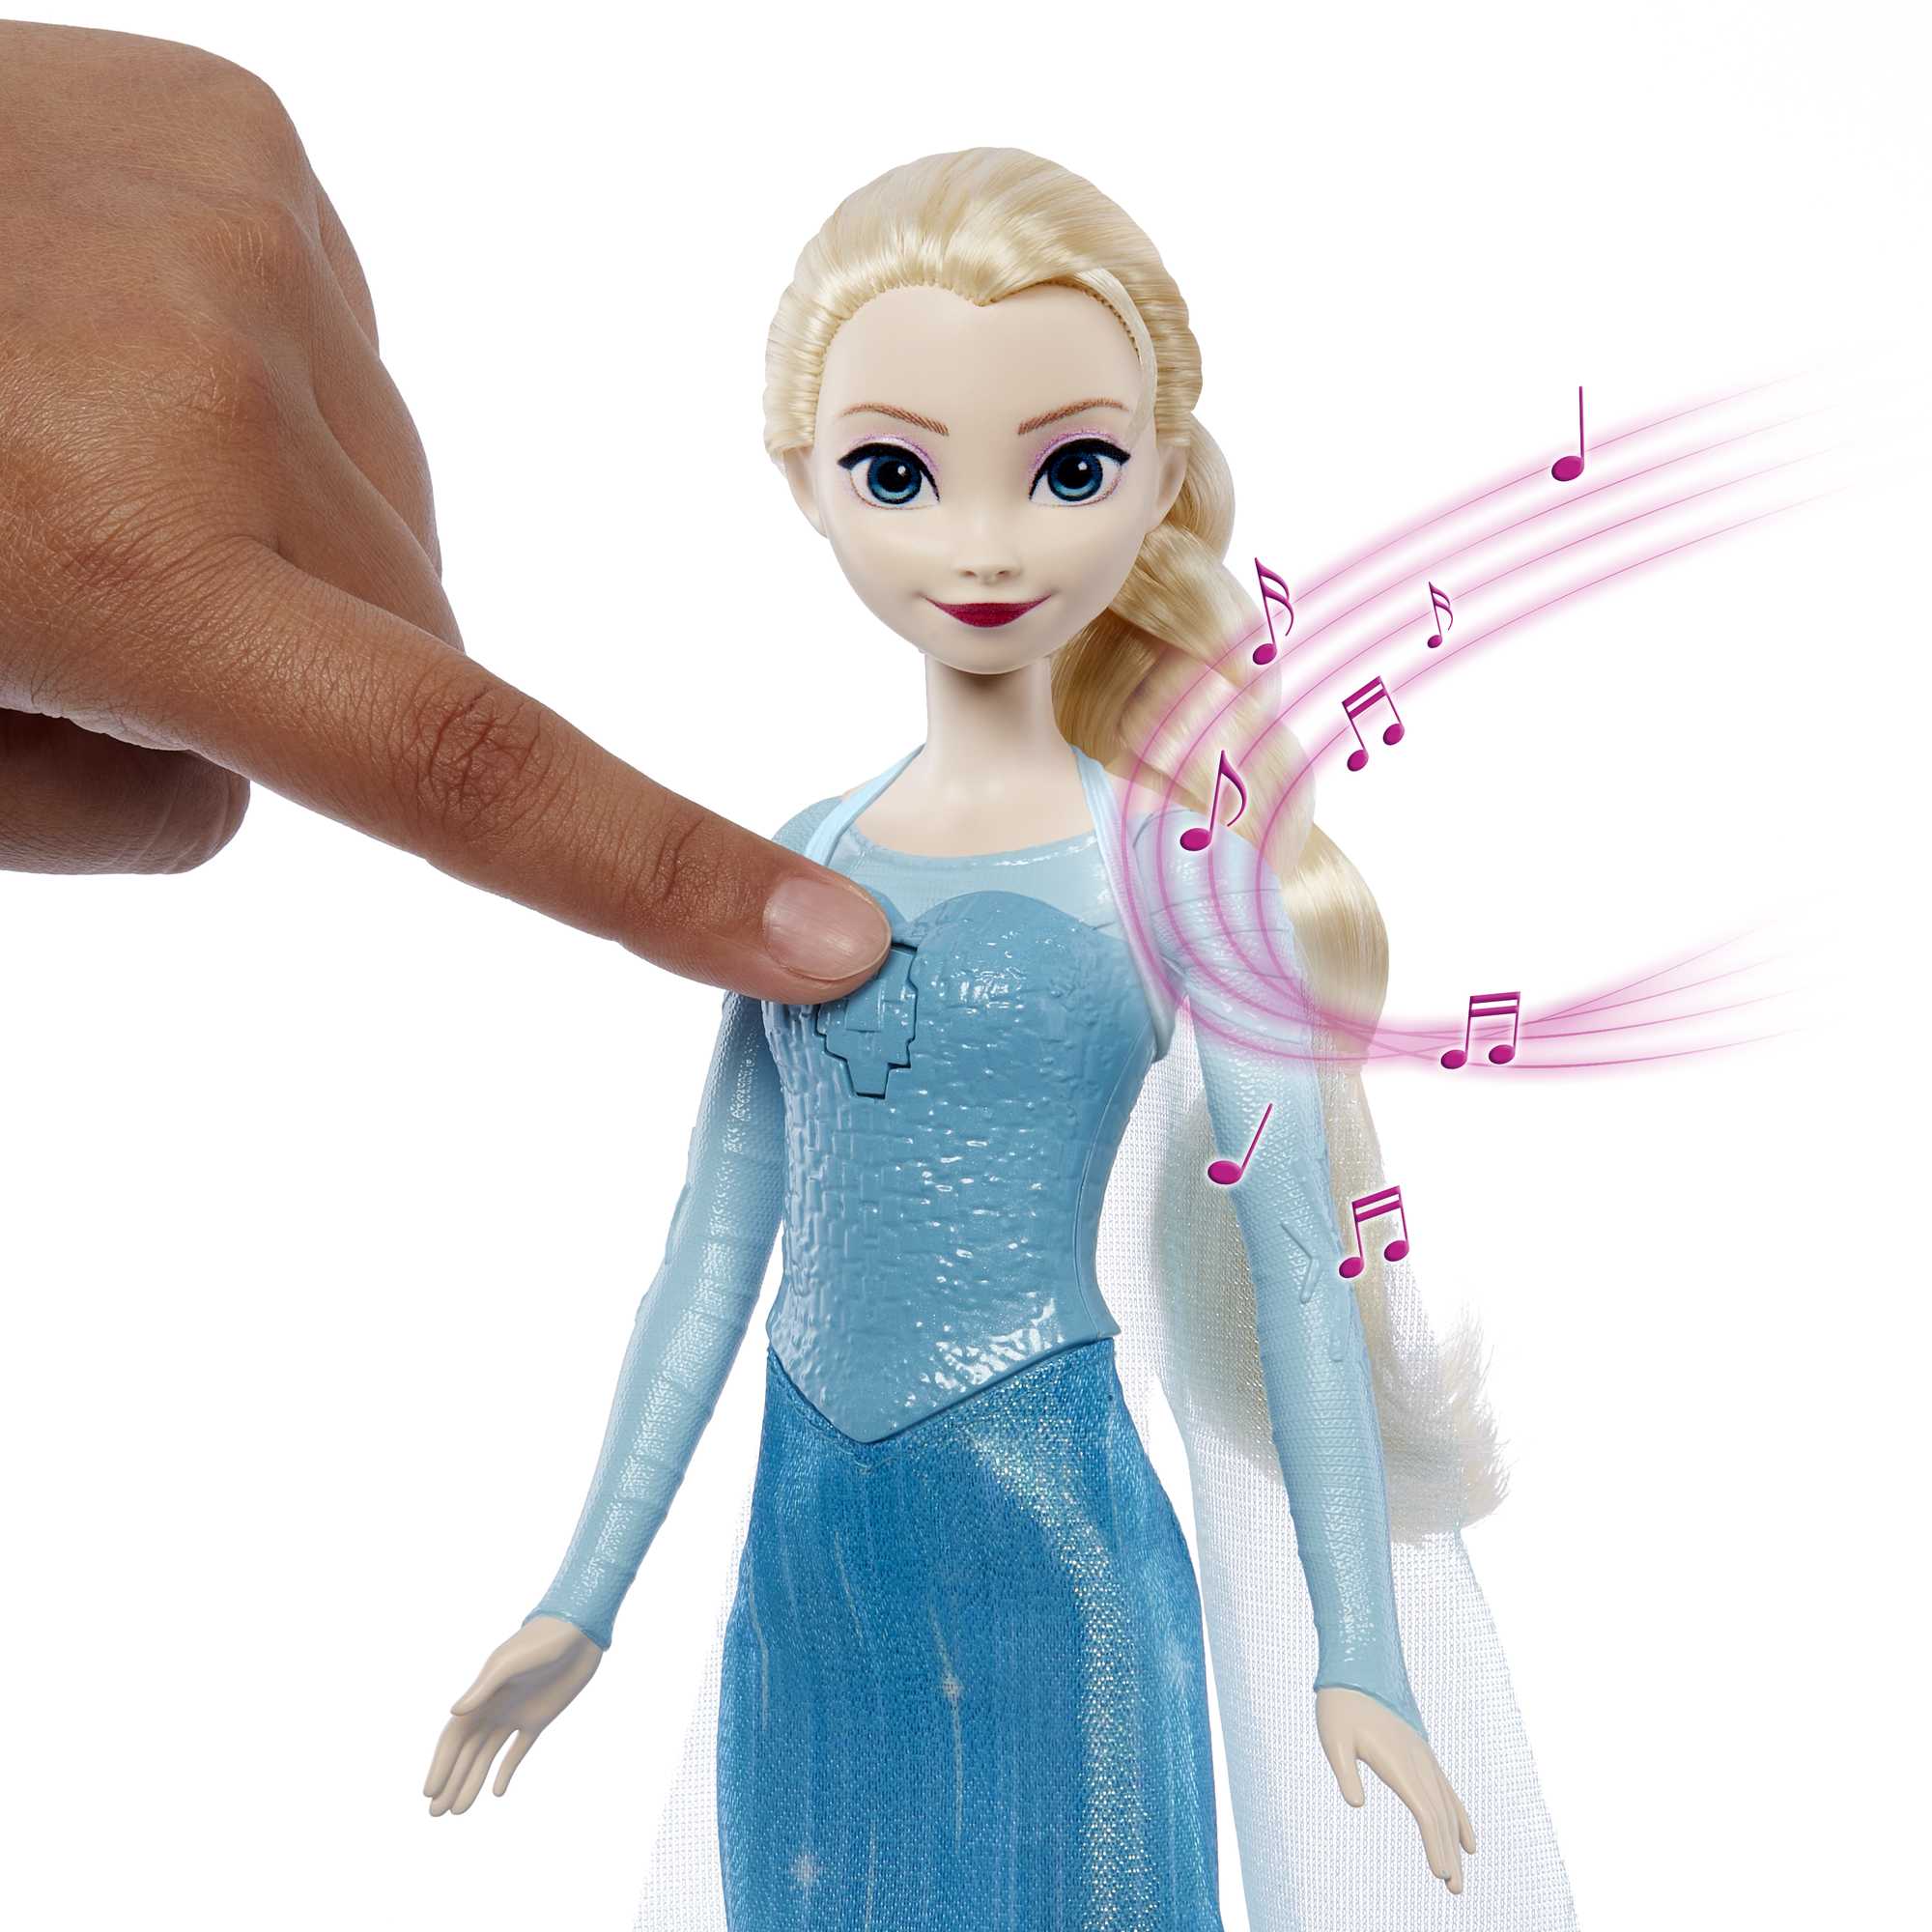 Disney La Reine des Neiges Poupée Elsa Chantante | Mattel